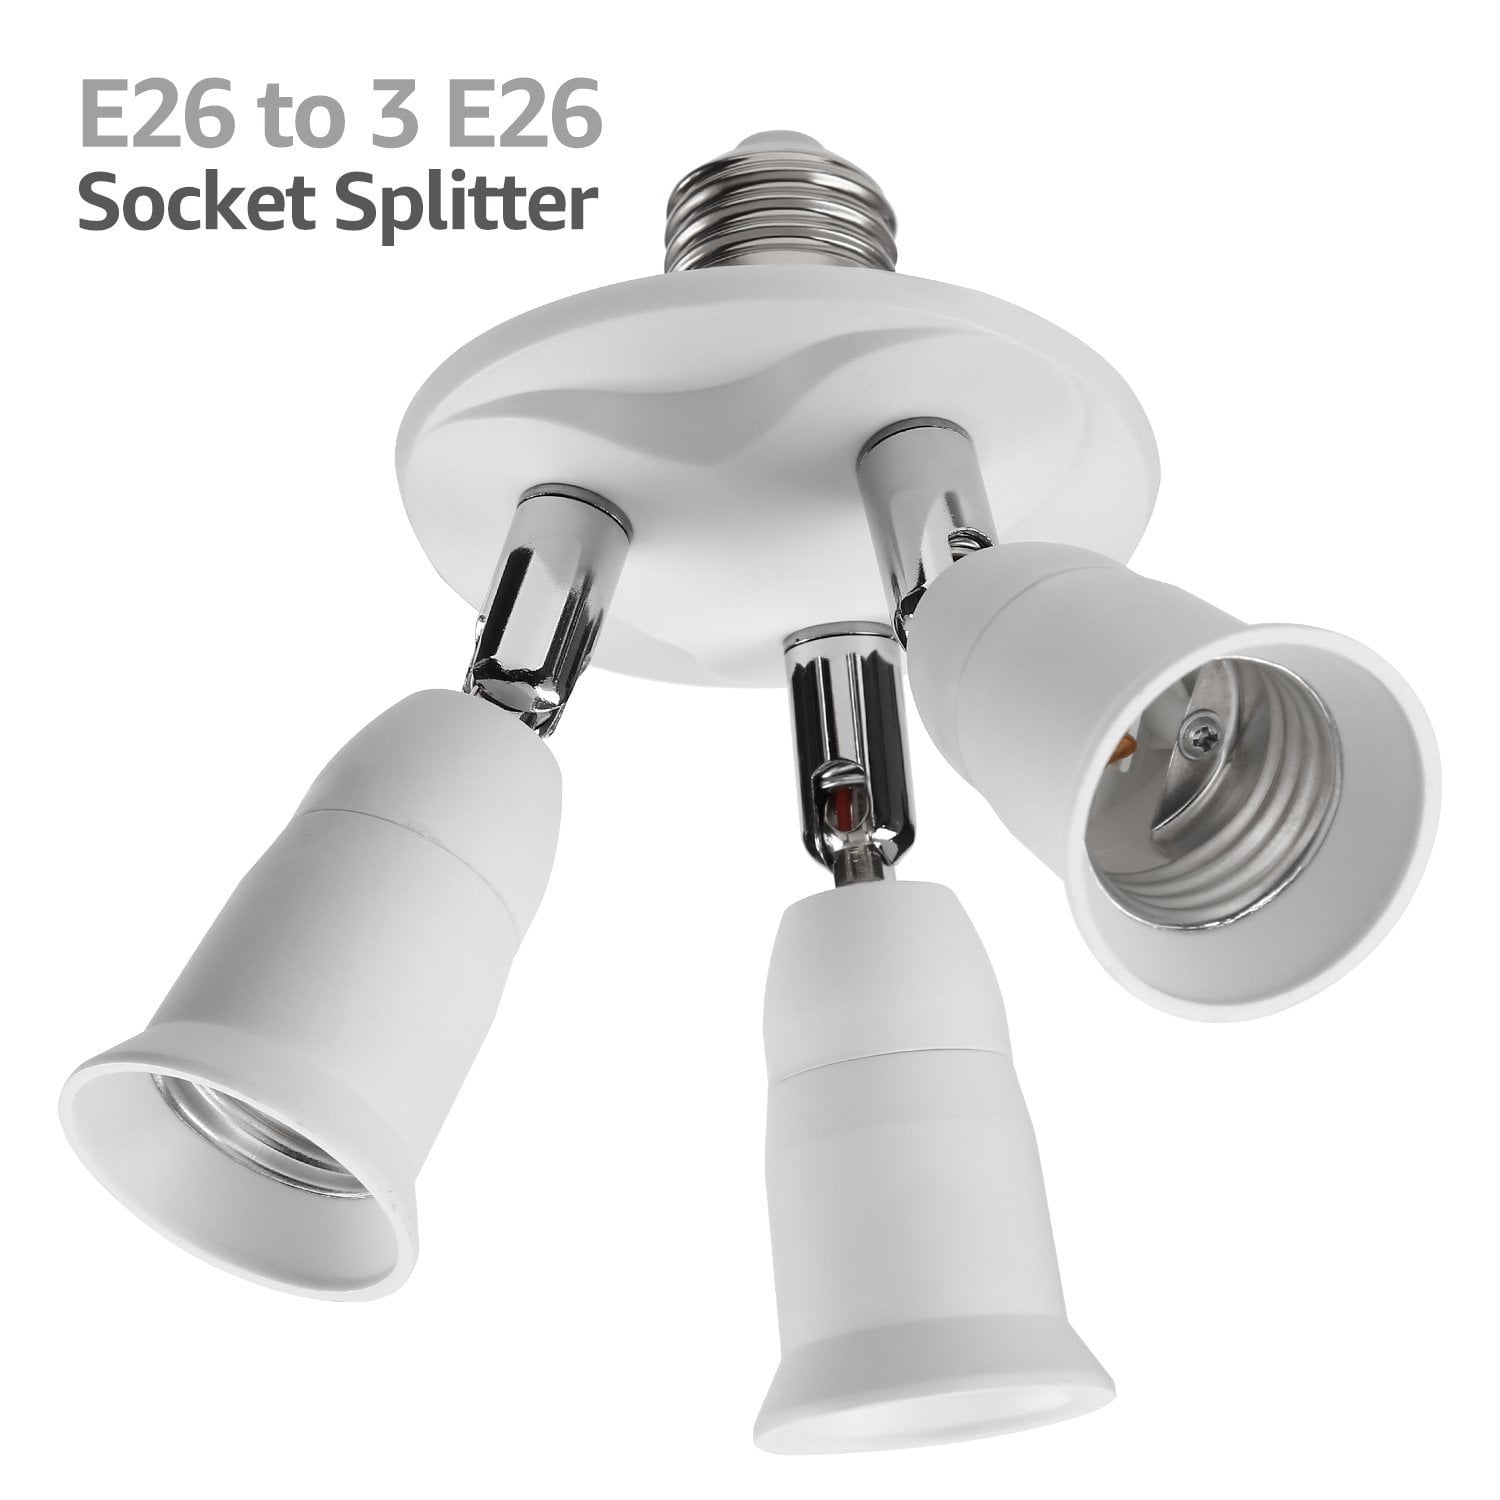 3 in 1 E27 Standard Medium Socket Splitter Converts 1 Socket to 3 Sockets 